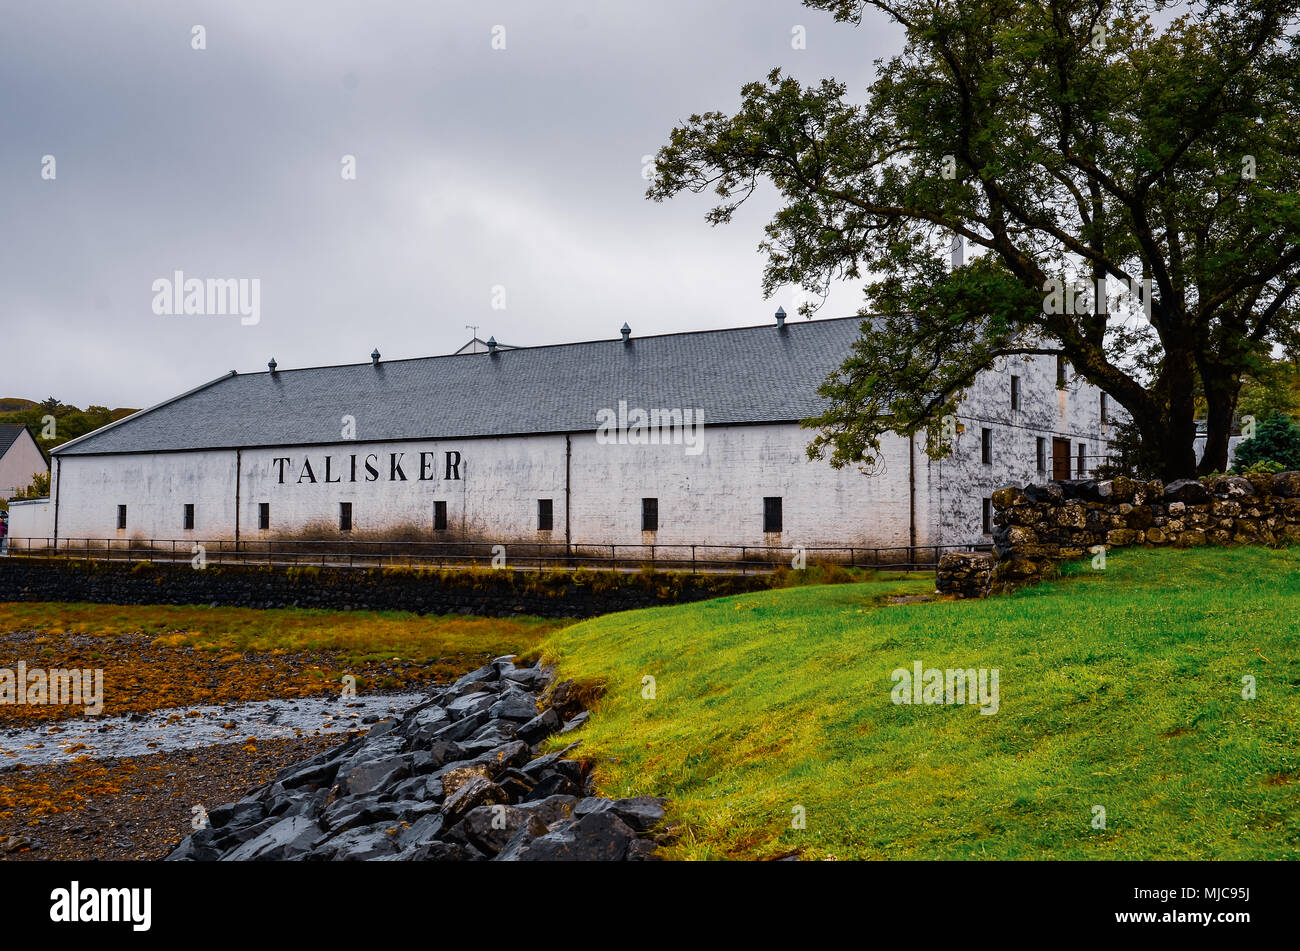 Isola di Skye, Regno Unito - 30 agosto 2013: Talisker Distillery durante nuvoloso giorno sull'Isola di Skye, Regno Unito Foto Stock